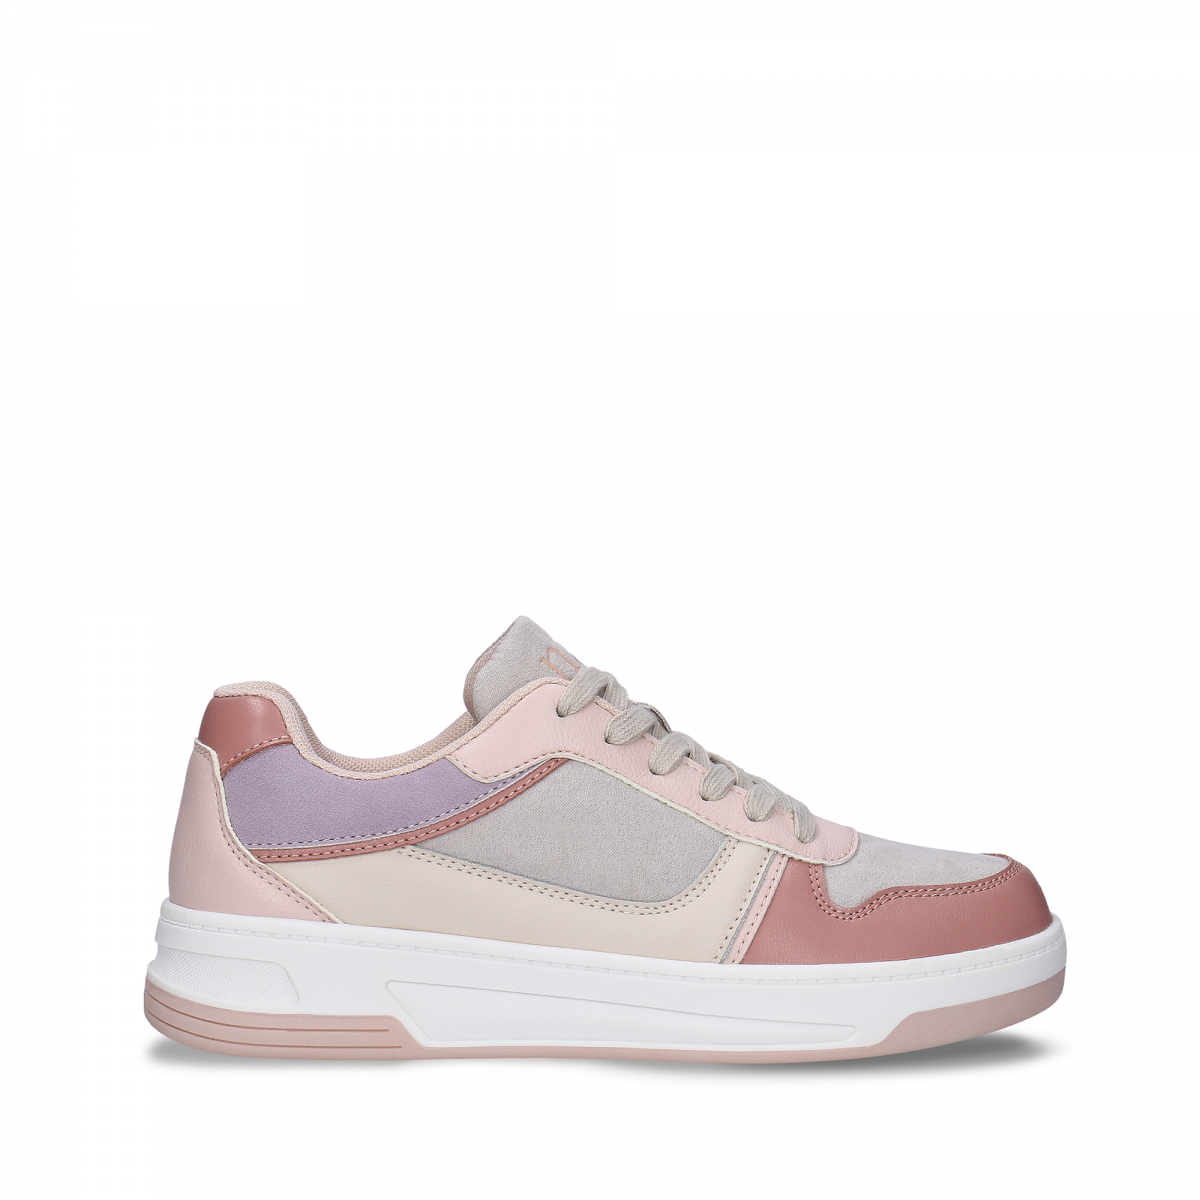 Vegan Sneakers | Online Shopping | Dara Pink lace-up basic sport shoe ...